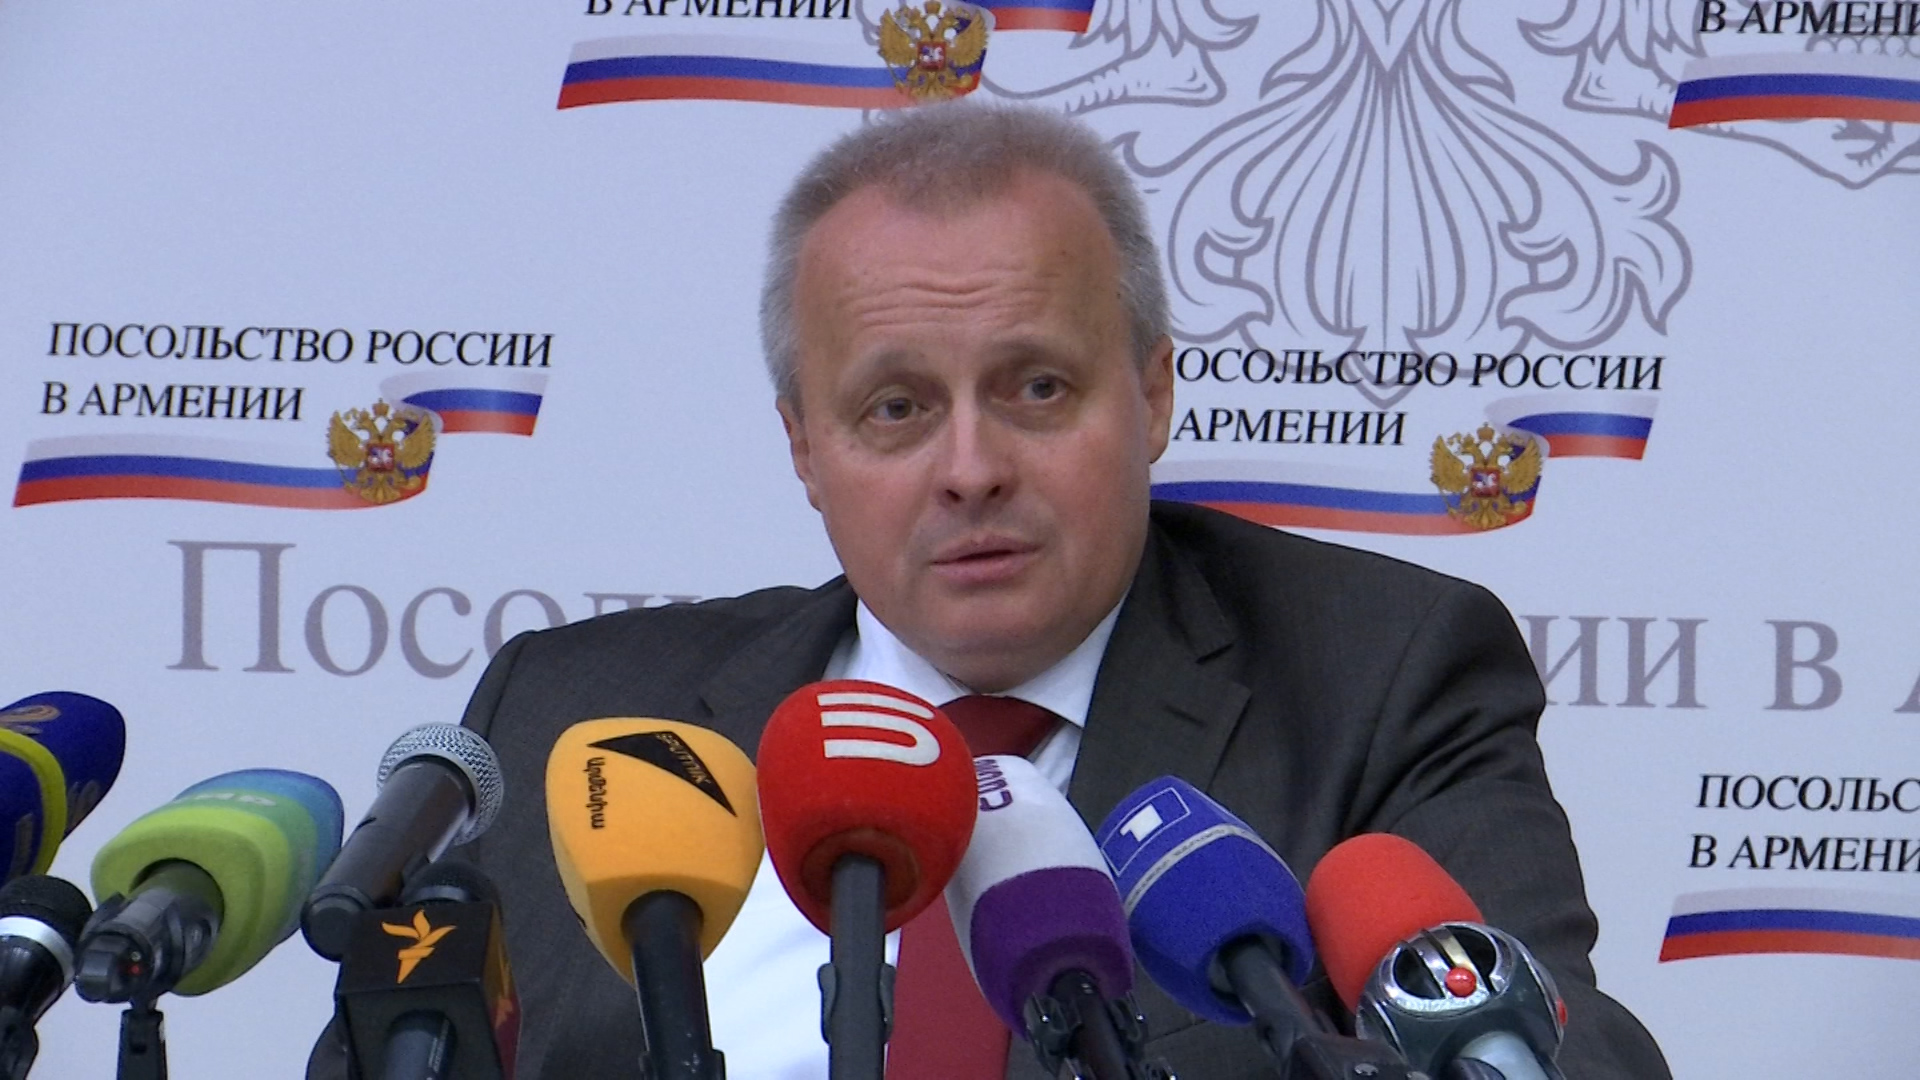 Россия с уважением относится к происходящим в Армении событиям  - посол 